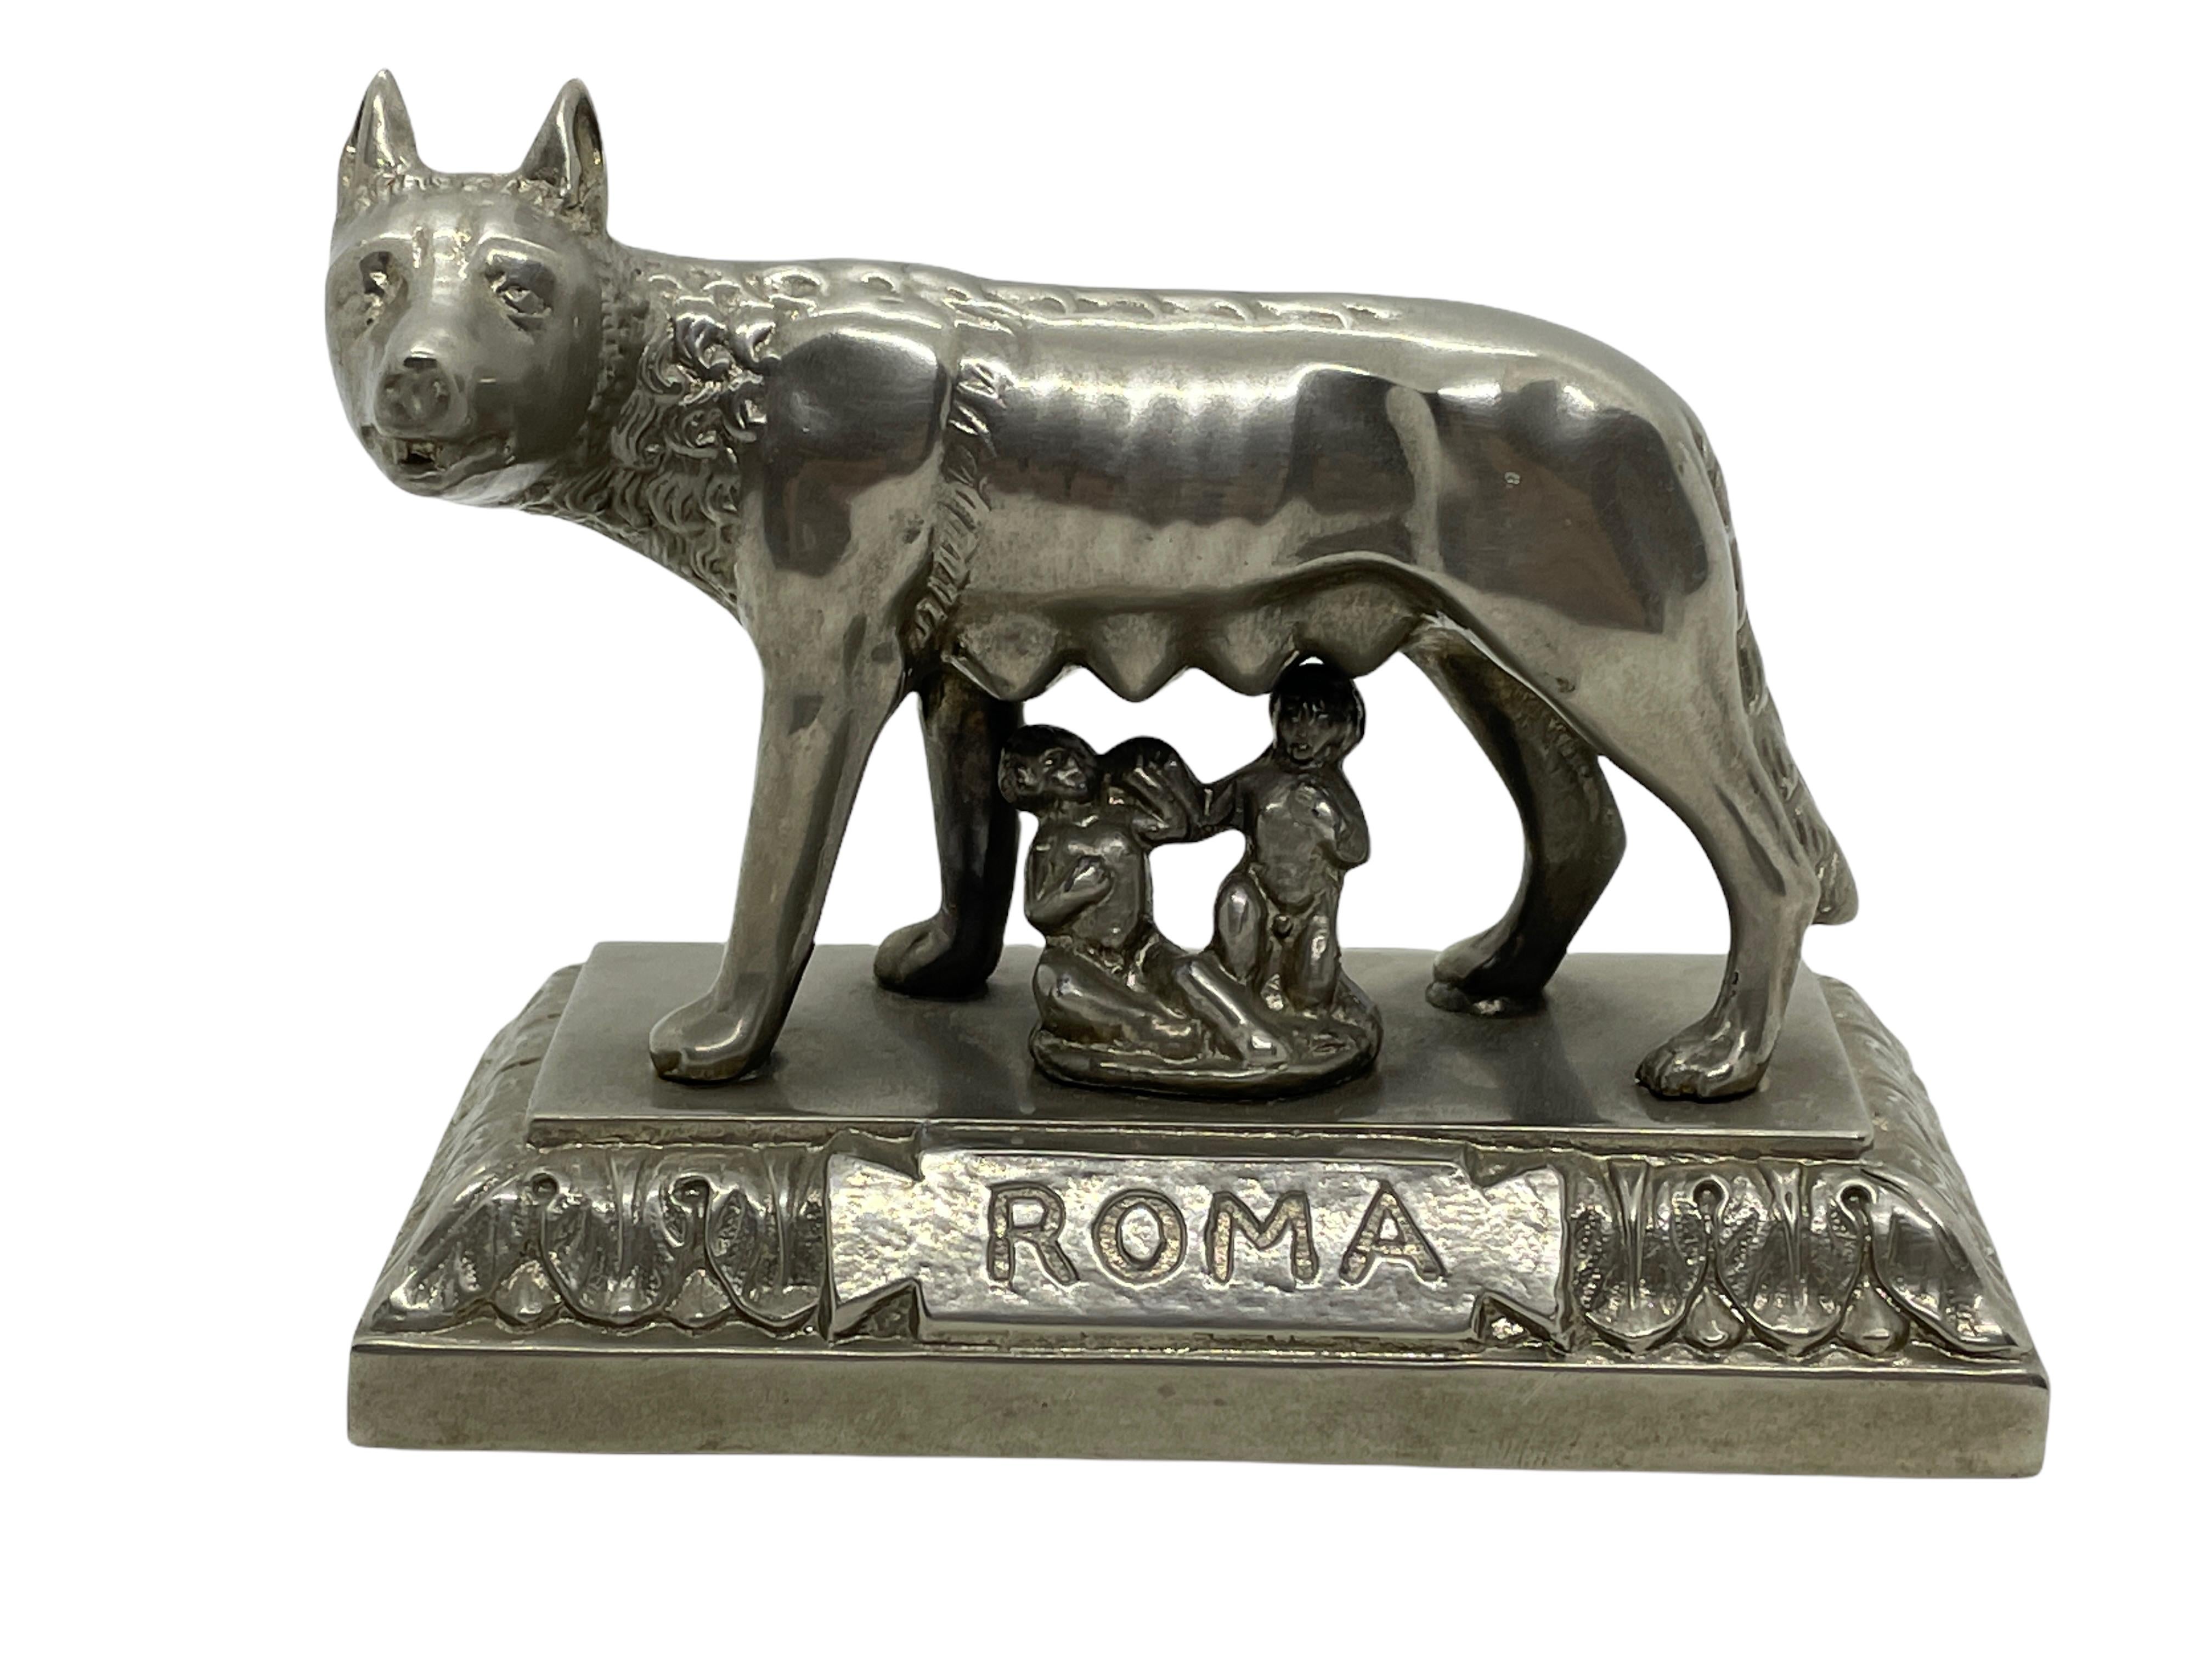 A Wolf of Rome Roma Romulus and Remus 1930s Souvenir Building Architectural Model. Quelques usures avec une belle patine:: mais c'est de l'ancien temps. Fabriqué en métal. Cet article a été acheté comme souvenir à Rome:: en Italie:: et a été